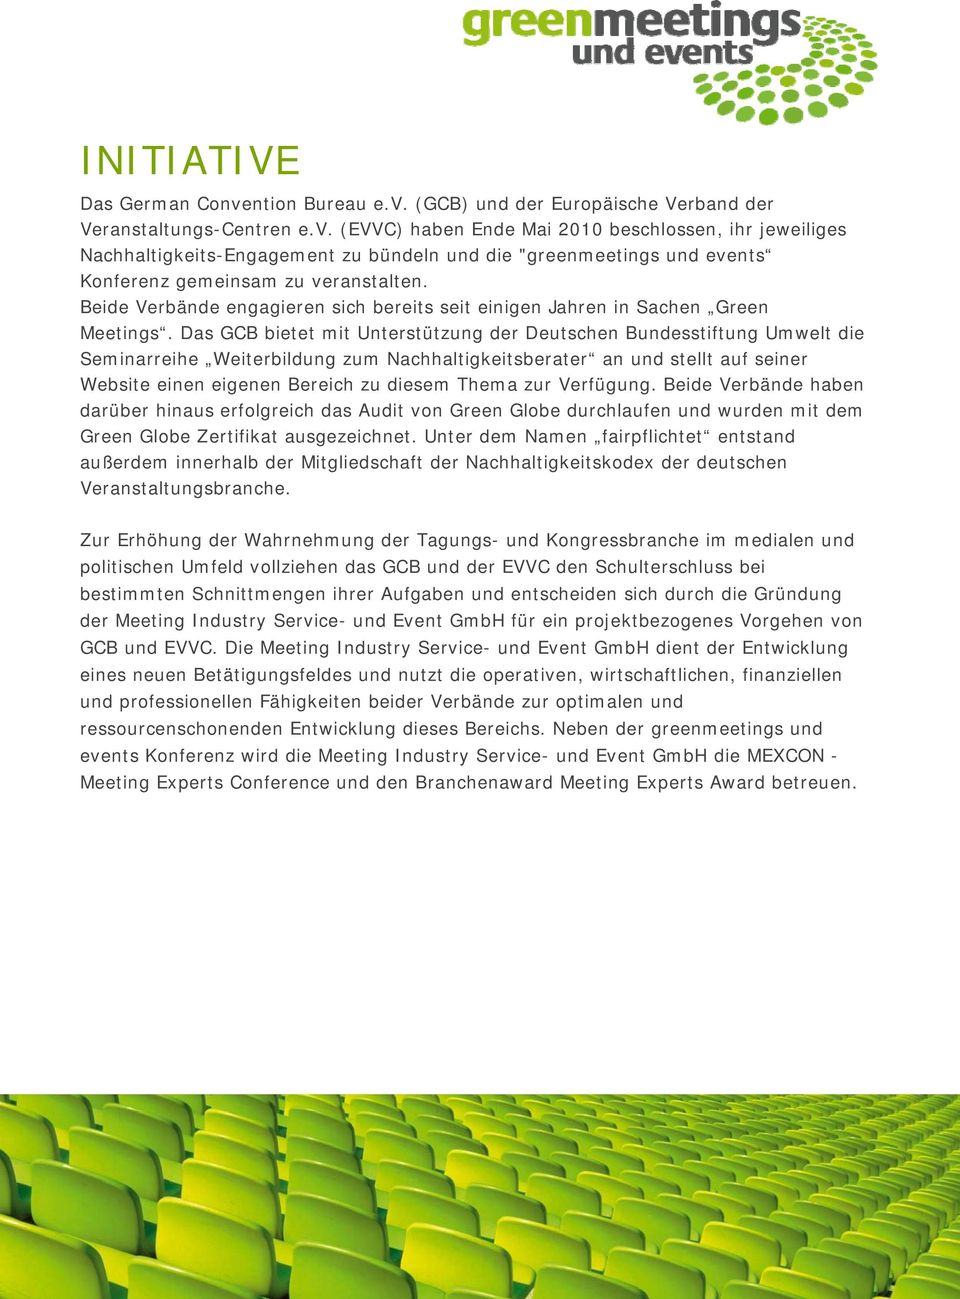 Das GCB bietet mit Unterstützung der Deutschen Bundesstiftung Umwelt die Seminarreihe Weiterbildung zum Nachhaltigkeitsberater an und stellt auf seiner Website einen eigenen Bereich zu diesem Thema